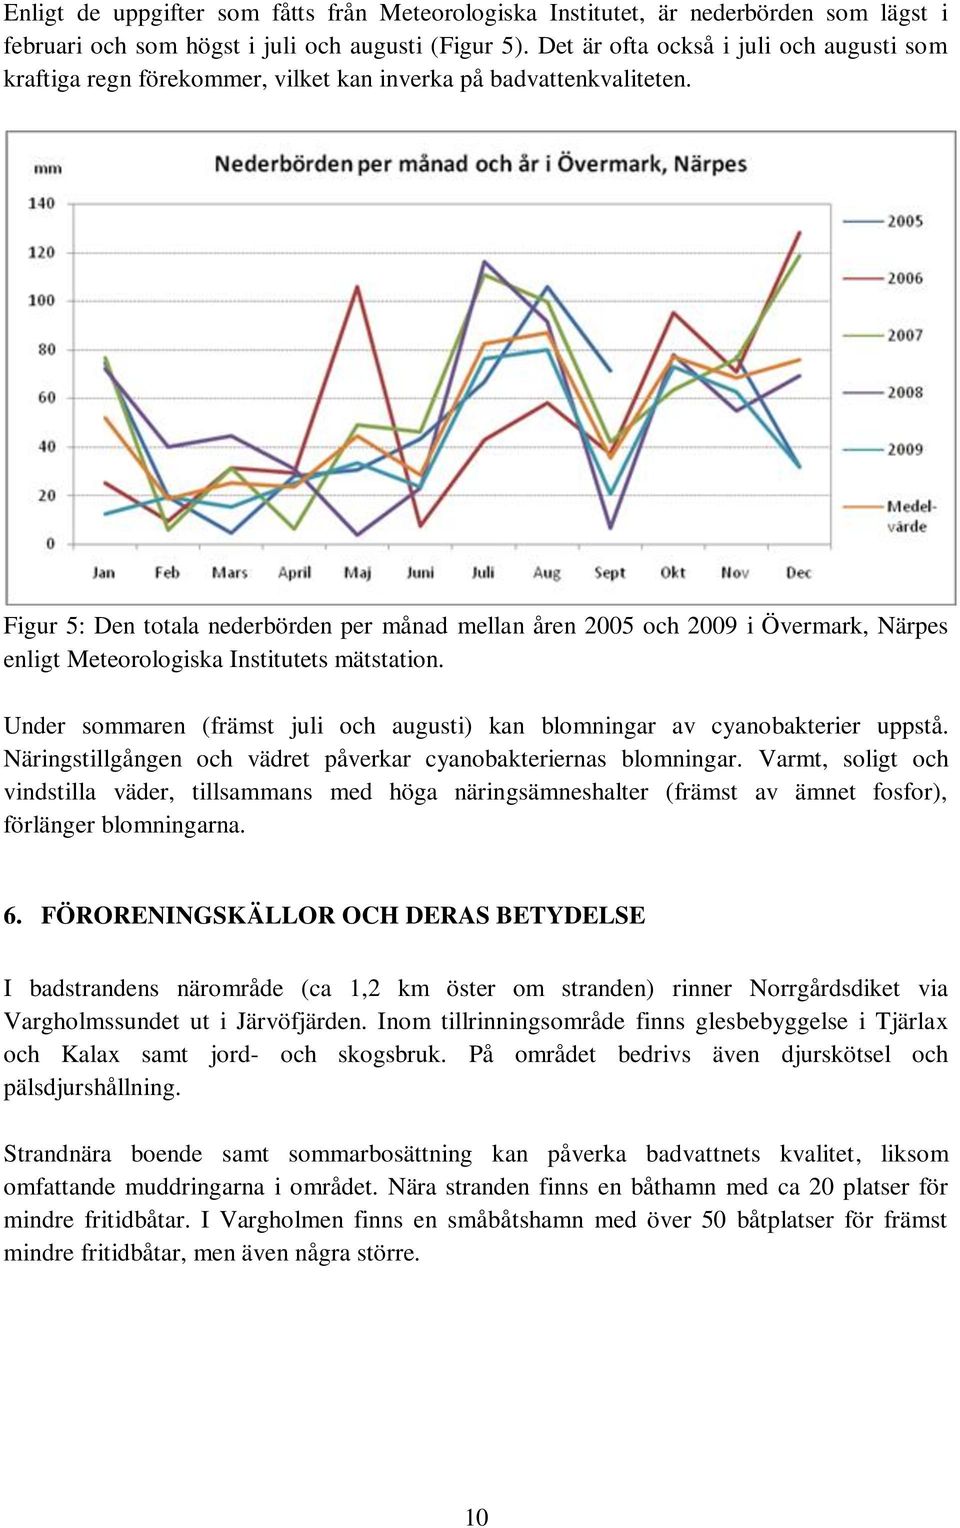 Figur 5: Den totala nederbörden per månad mellan åren 2005 och 2009 i Övermark, Närpes enligt Meteorologiska Institutets mätstation.